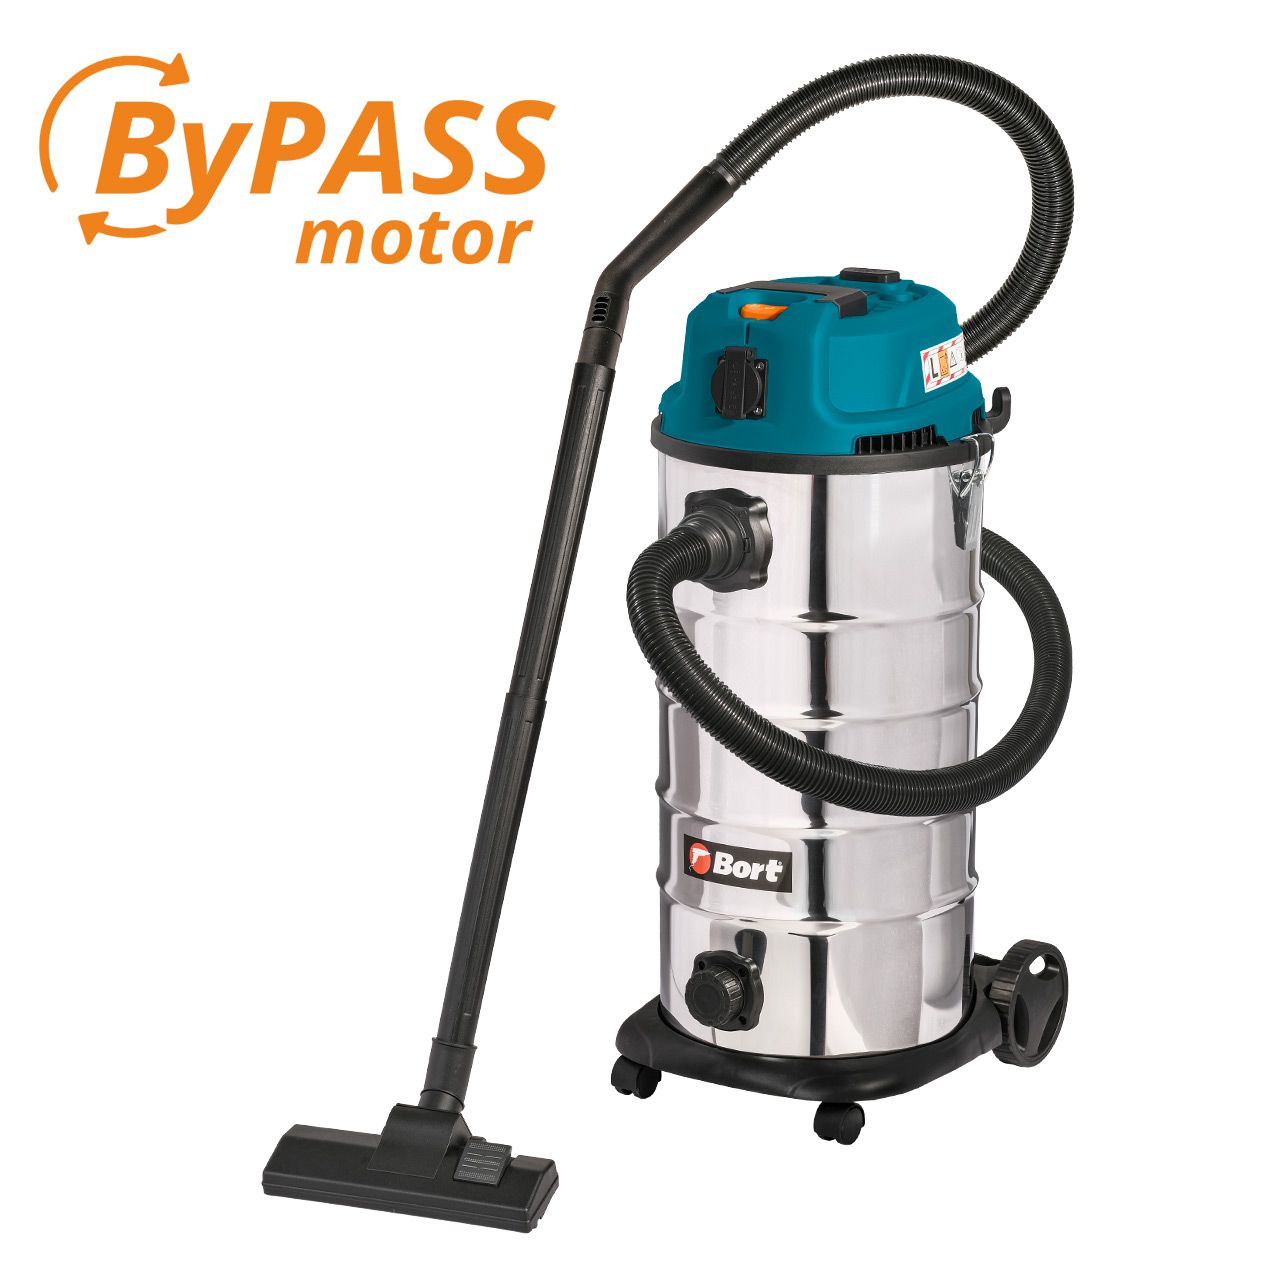 Пылесос для сухой и влажной уборки Bort BSS-1640-STORM пылесос bort bss 1440 pro